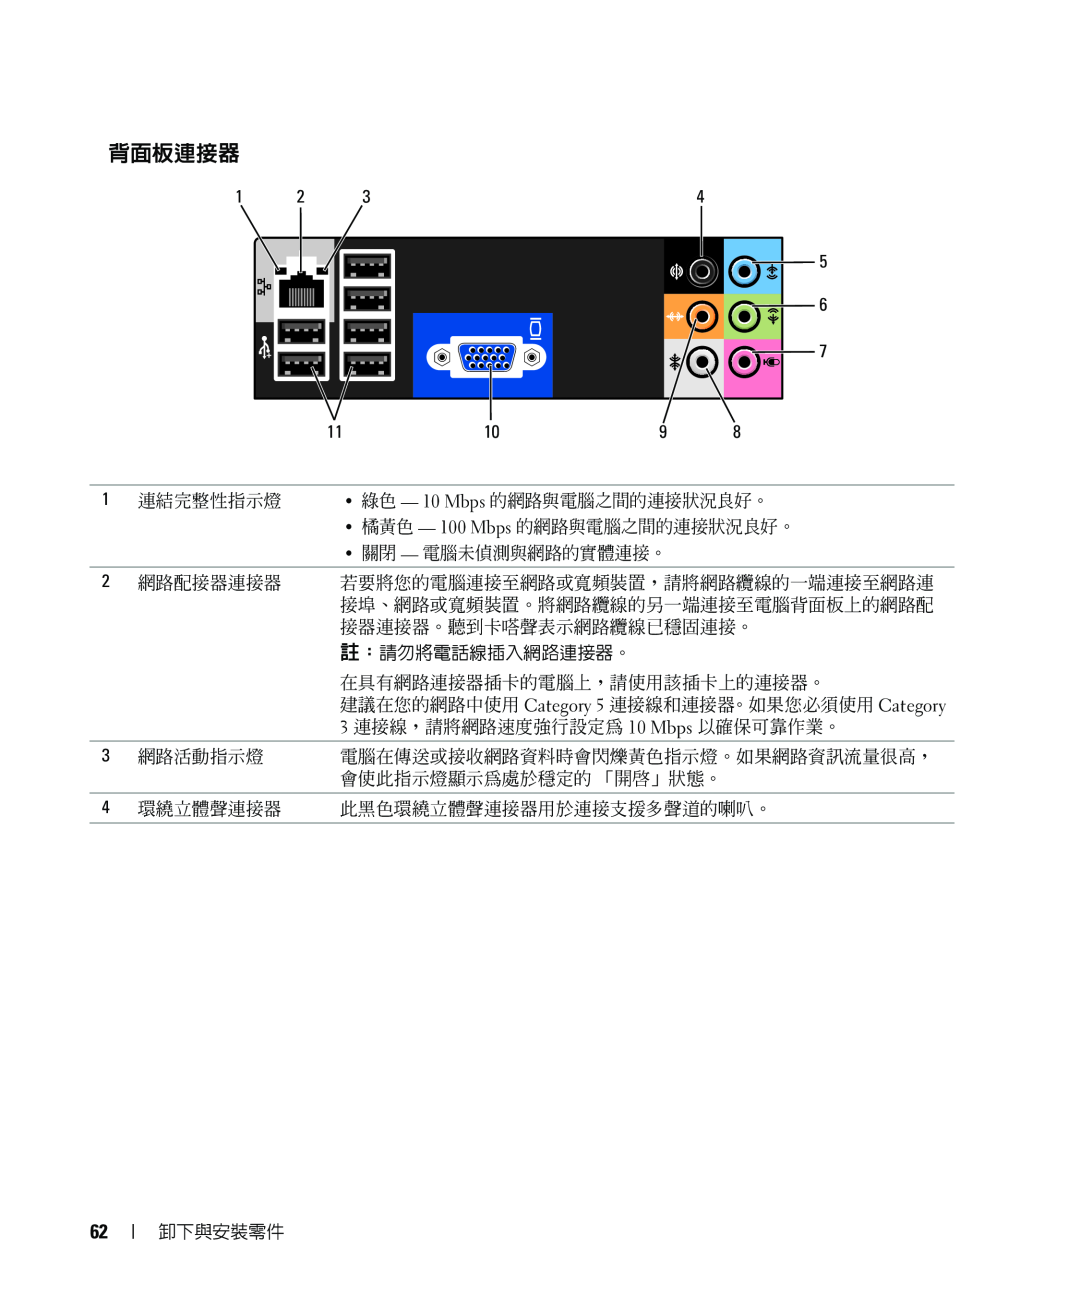 Dell E520 manual 背面板連接器, 建議在您的網路中使用 Category 5 連接線和連接器。如果您必須使用 Category 